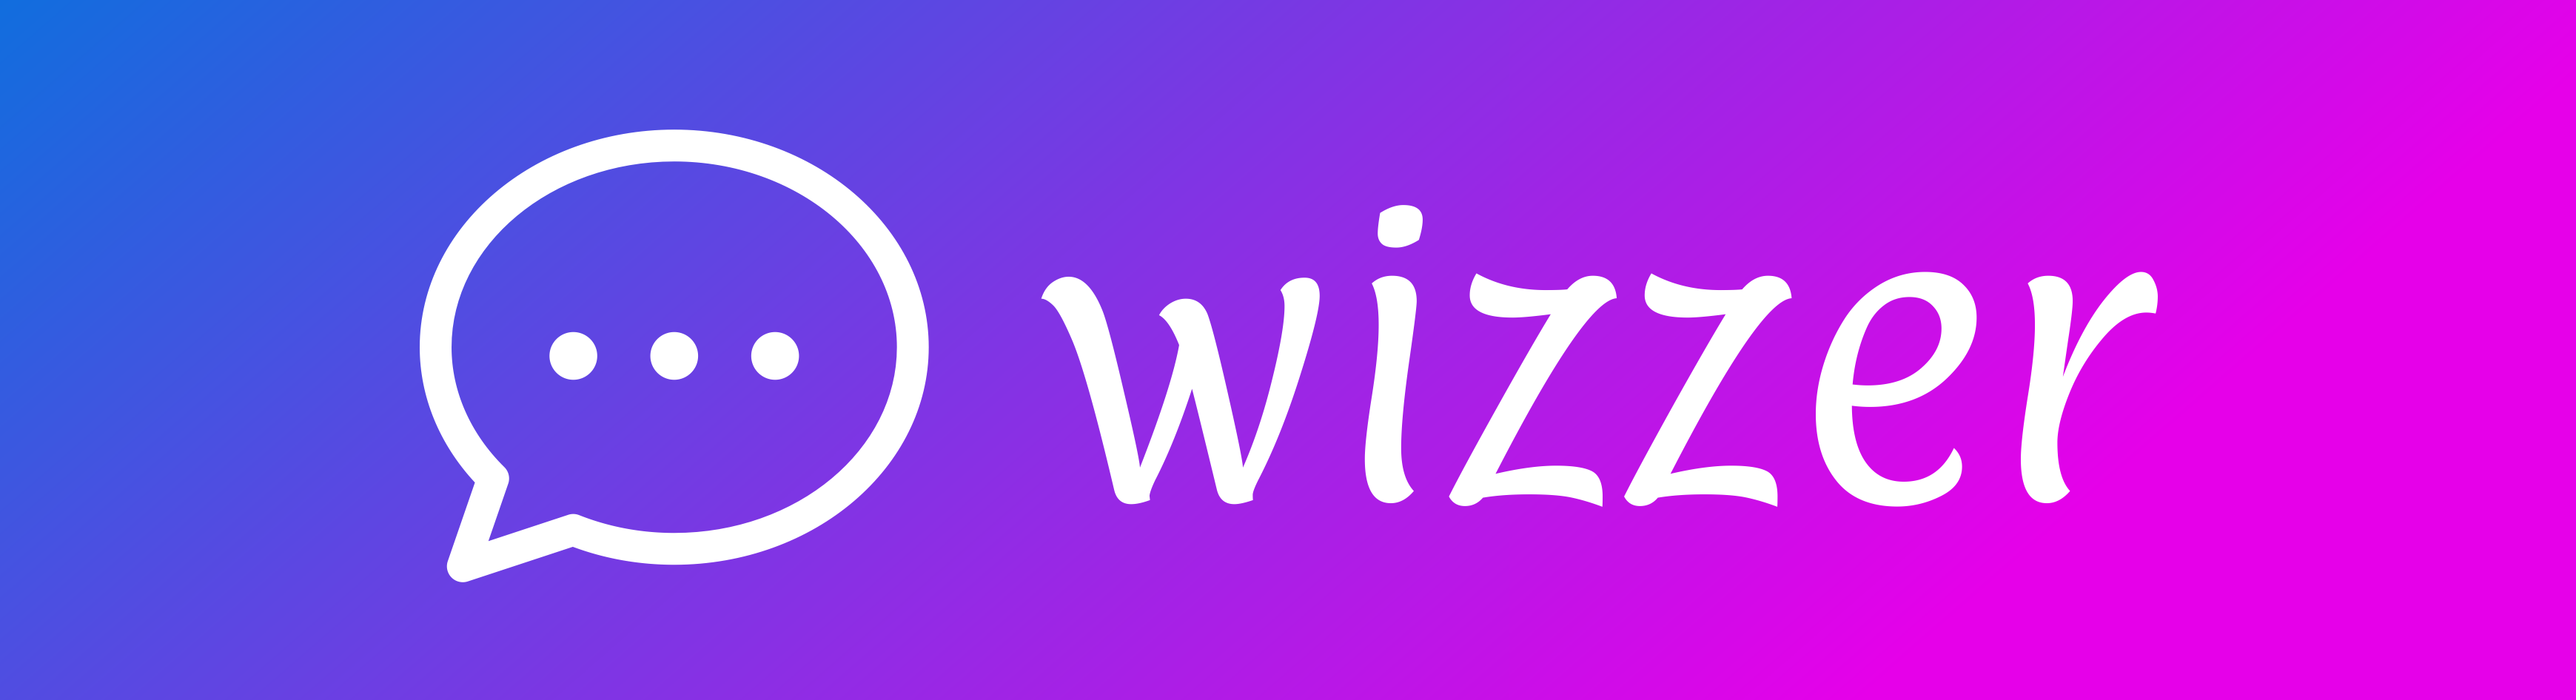 wizzer logo